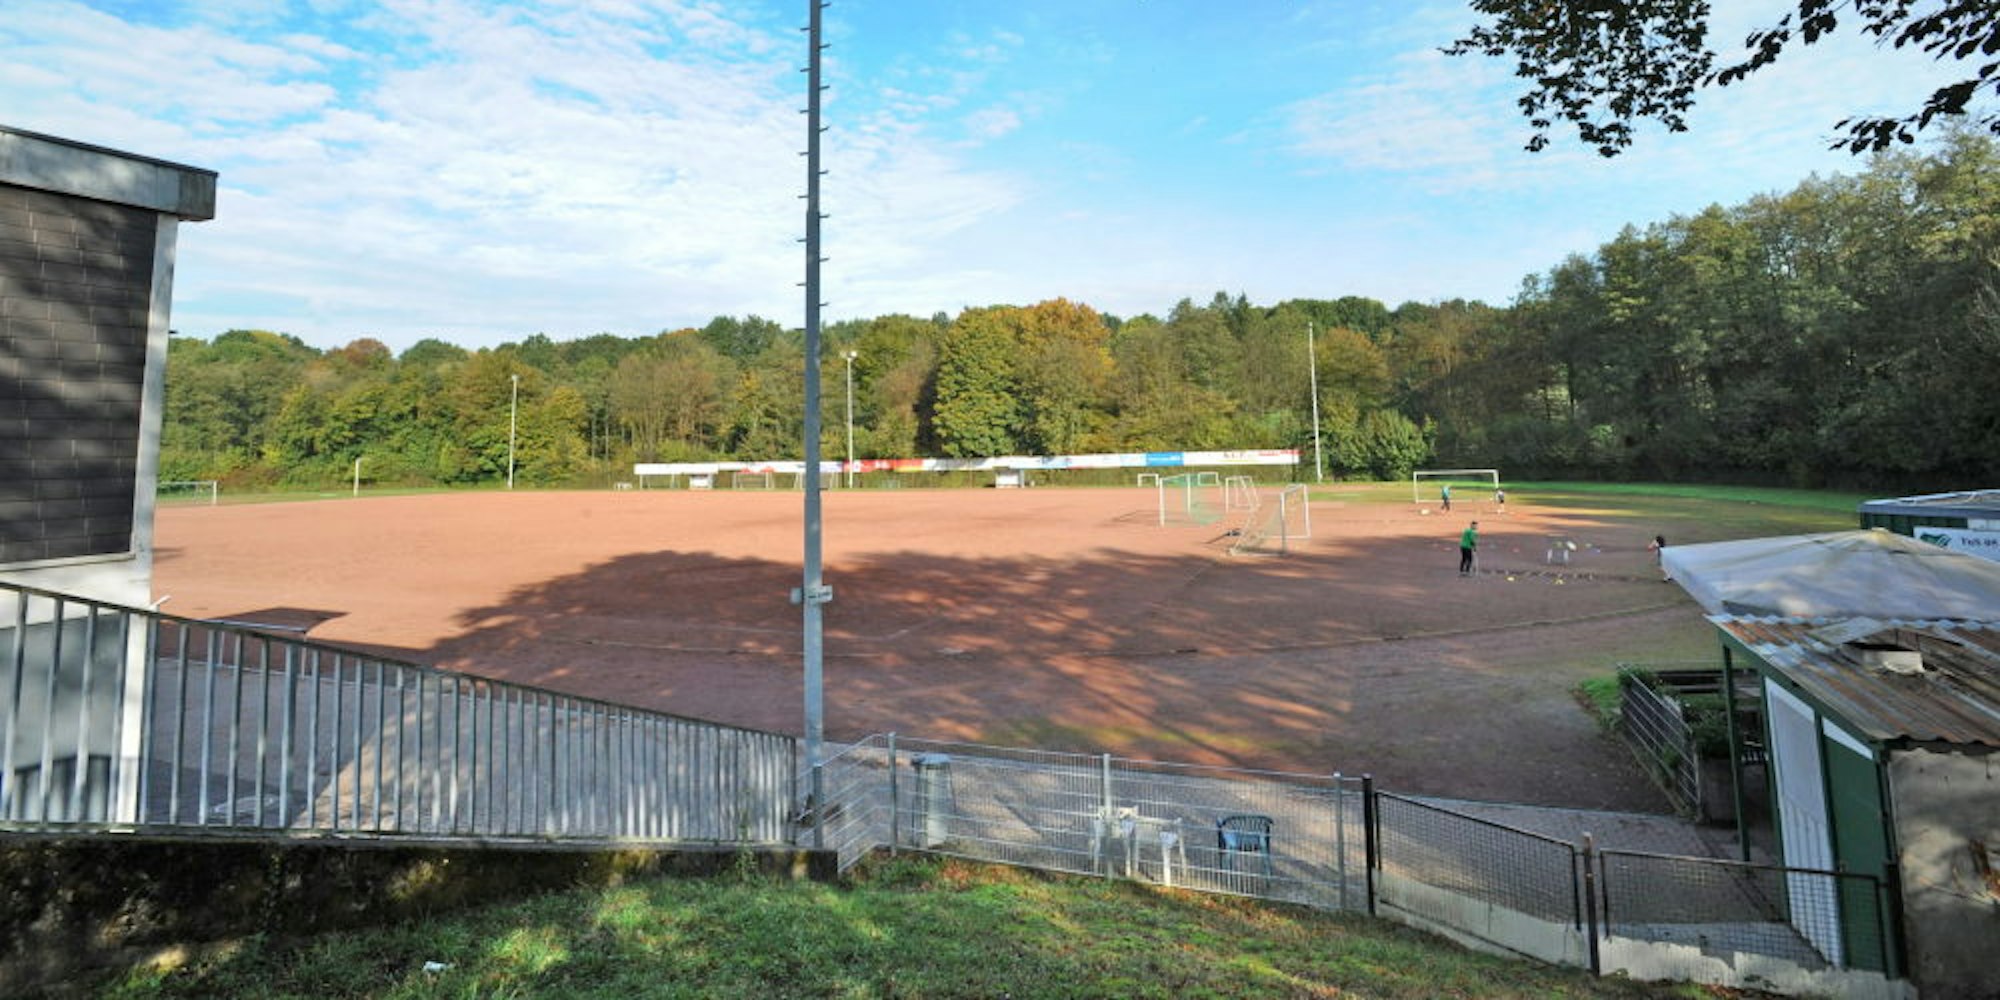 Der Sportplatz am Weidenbusch soll einen Kunstrasen bekommen, trotz Zusage muss der TuS Quettingen weiter warten.